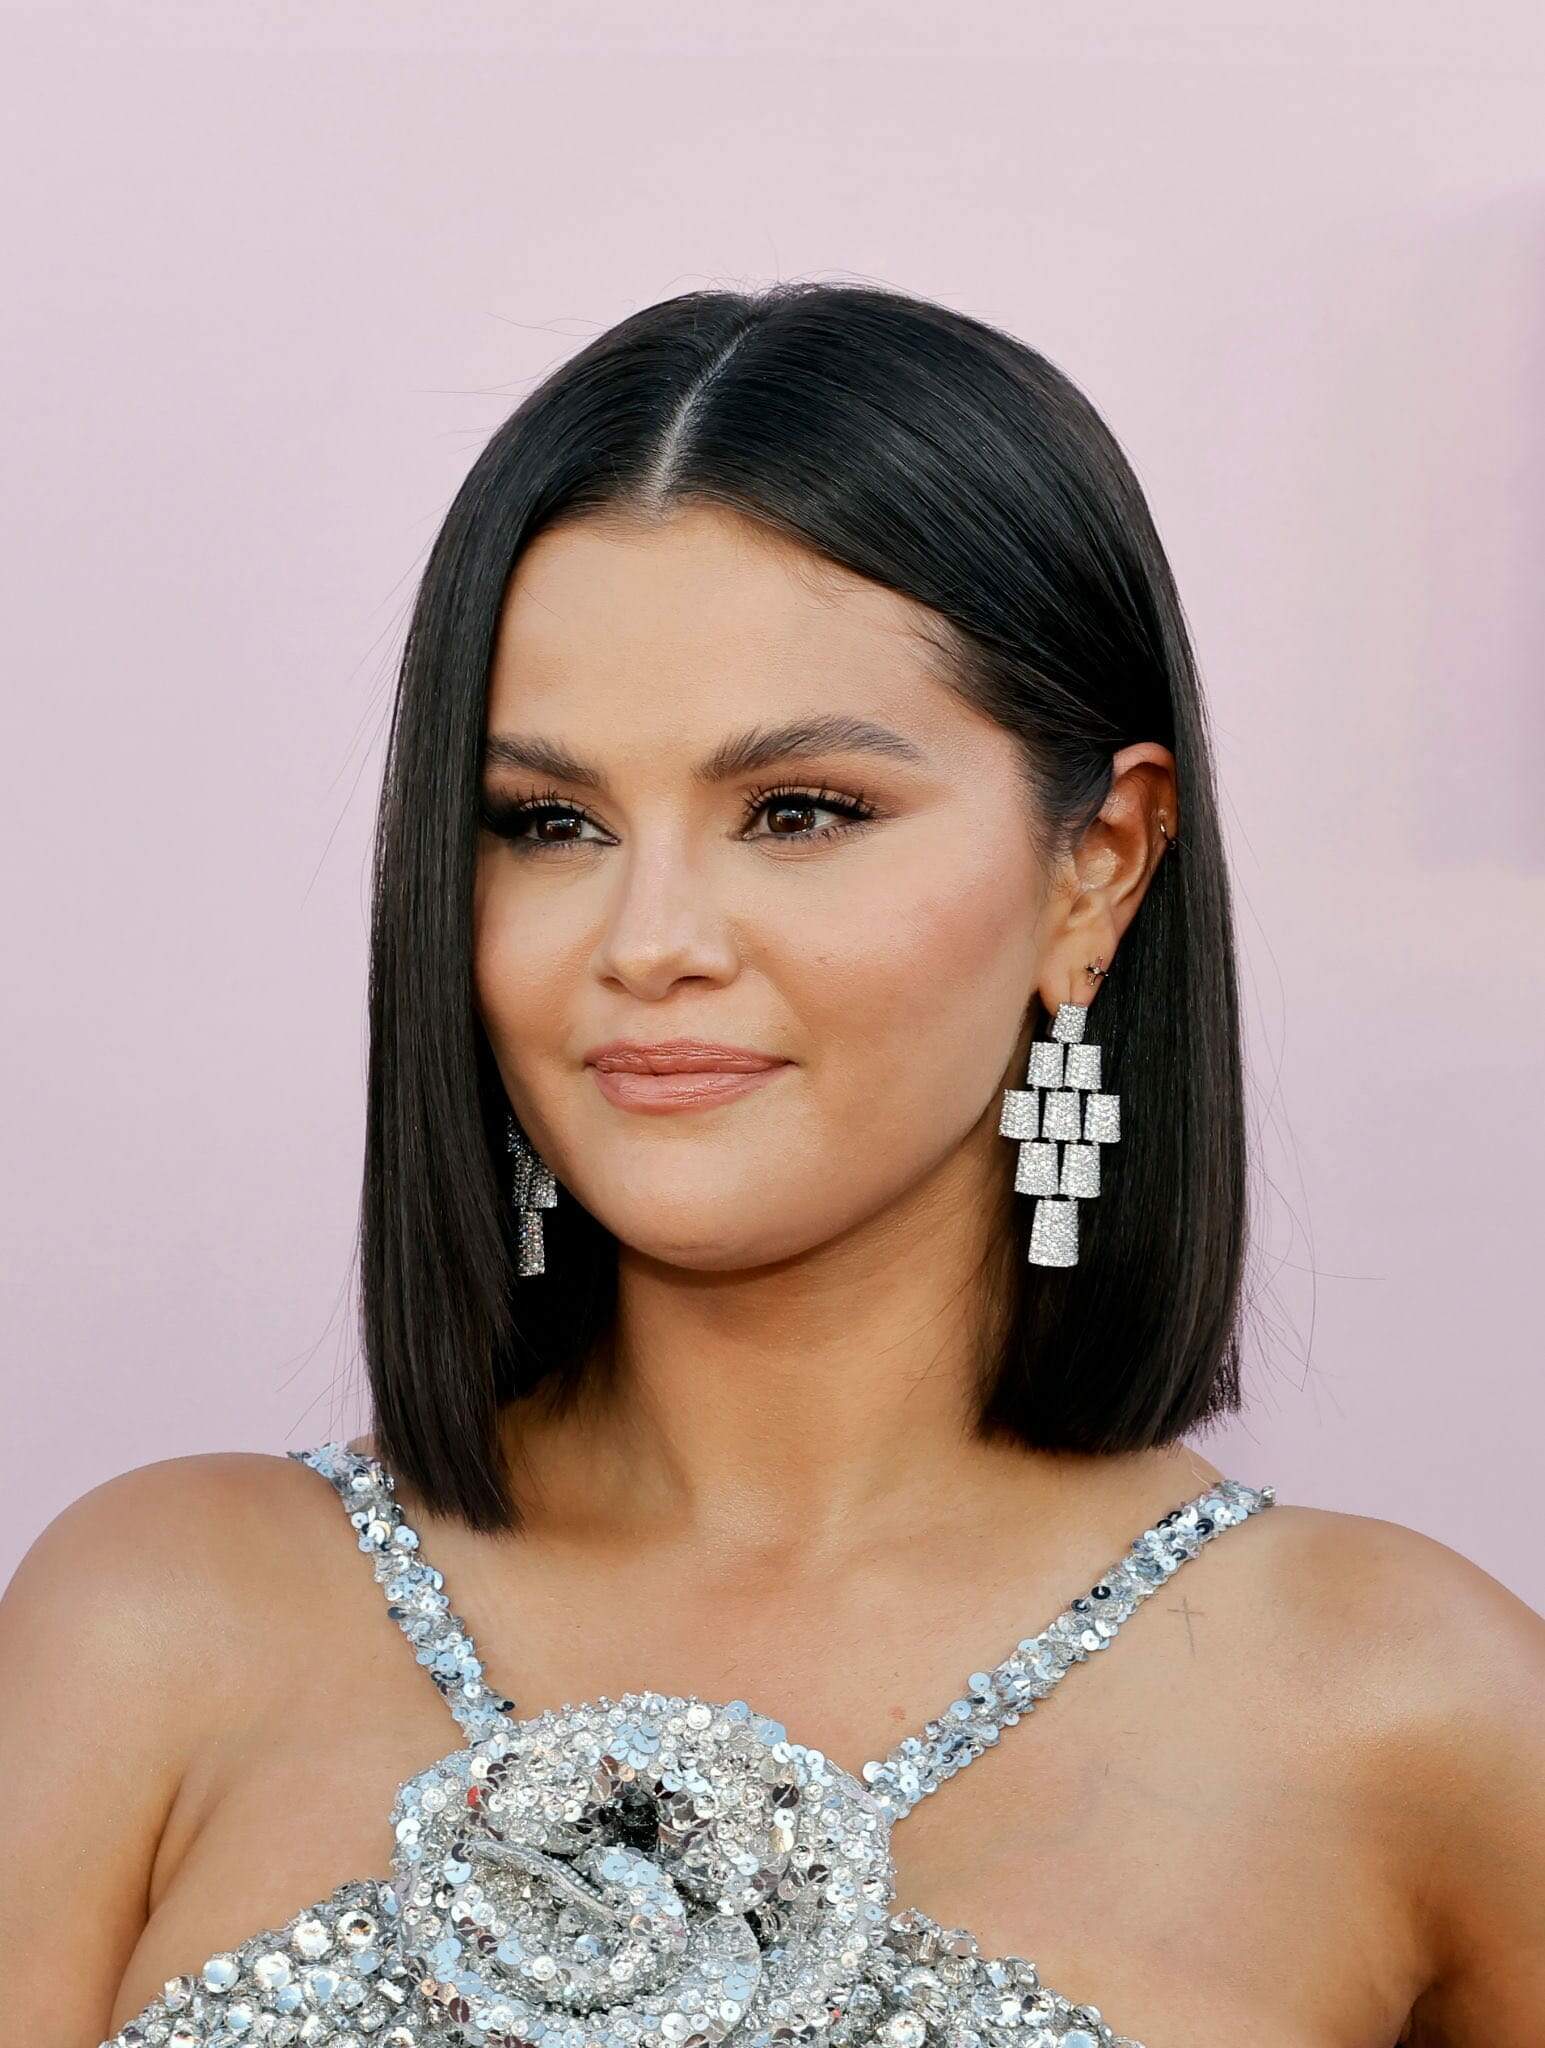 Selena Gomez surge com novo visual e brilha em evento beneficente em Los Angeles (Foto: Reprodução/Getty Images)